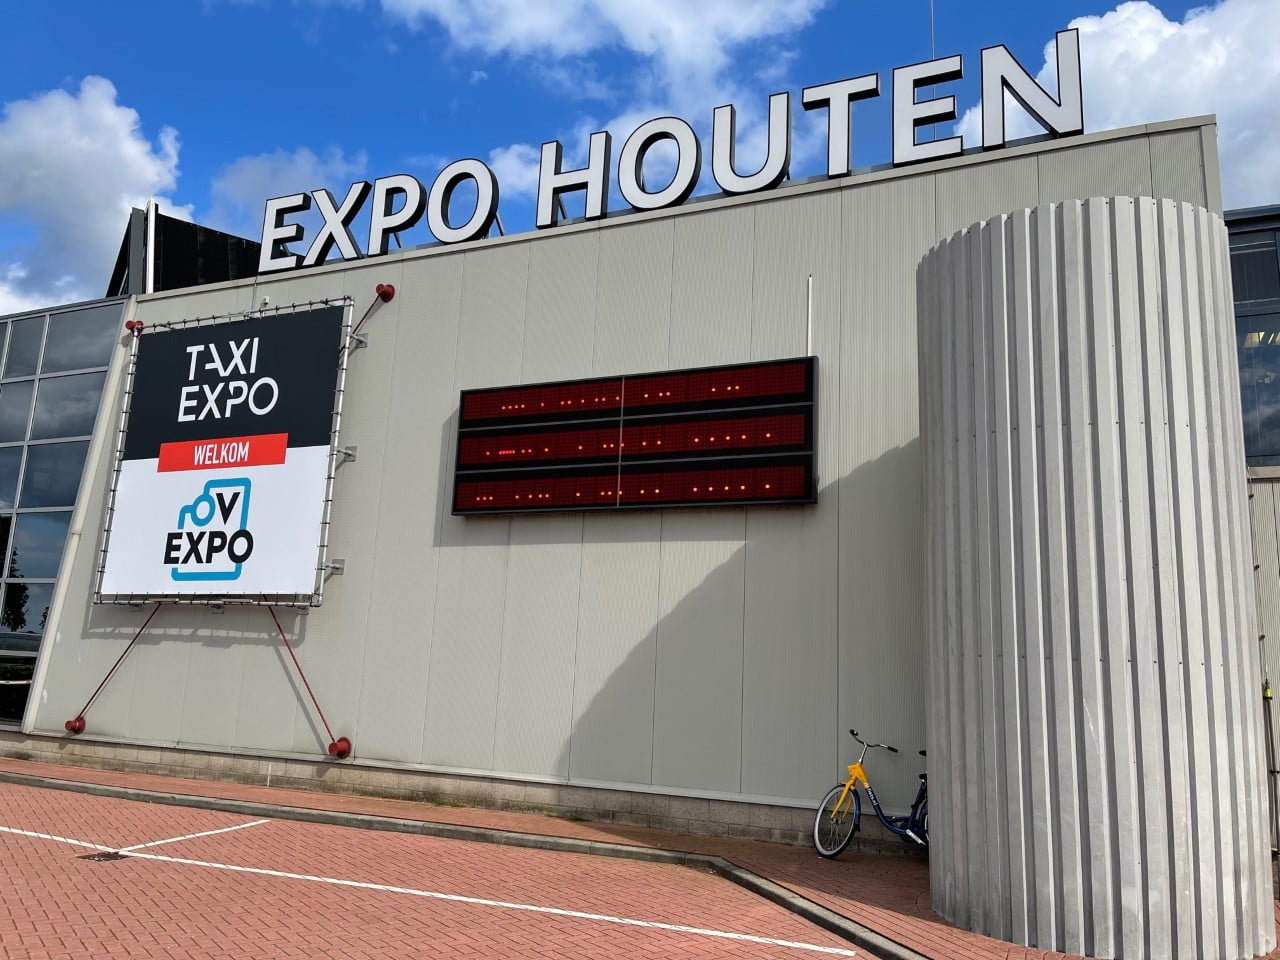 Taxi Expo, ein besonderer Treffpunkt